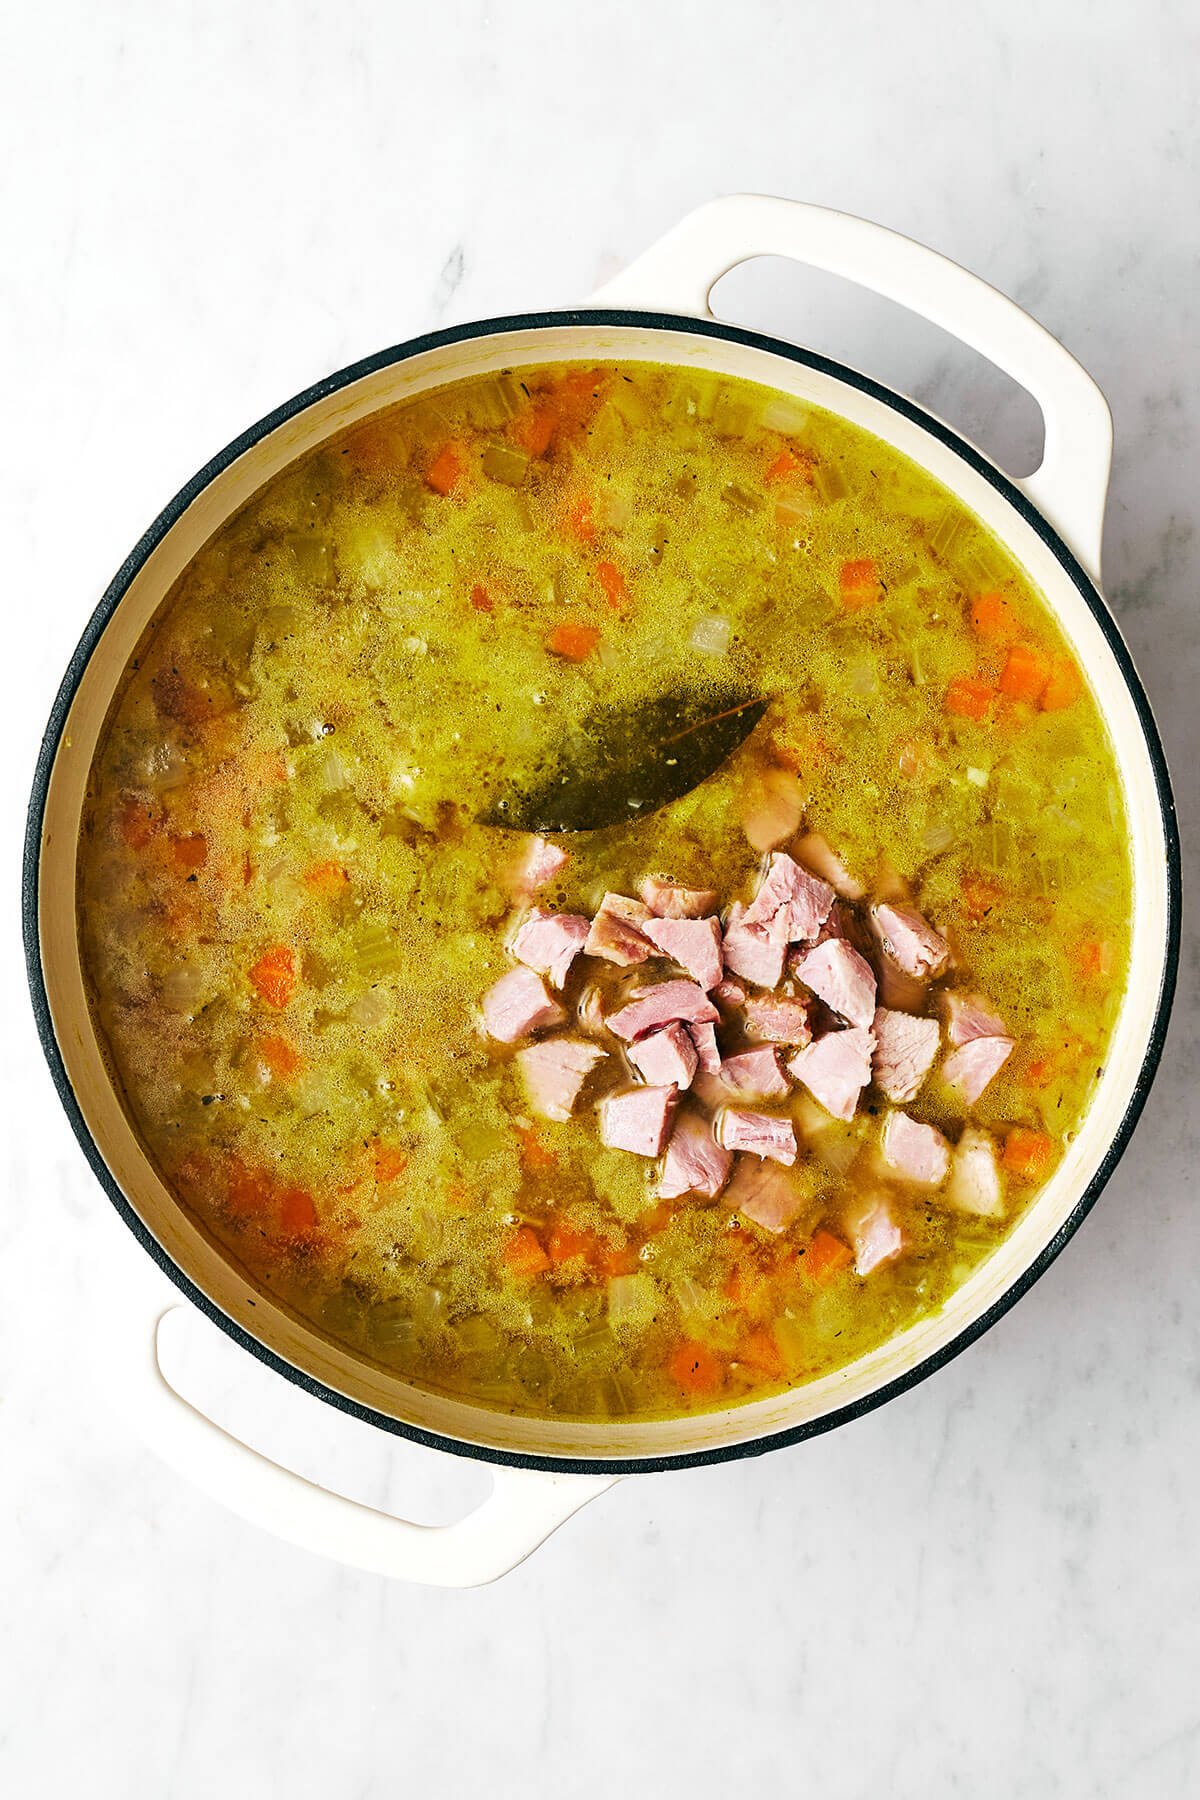 Making split pea soup in a pot